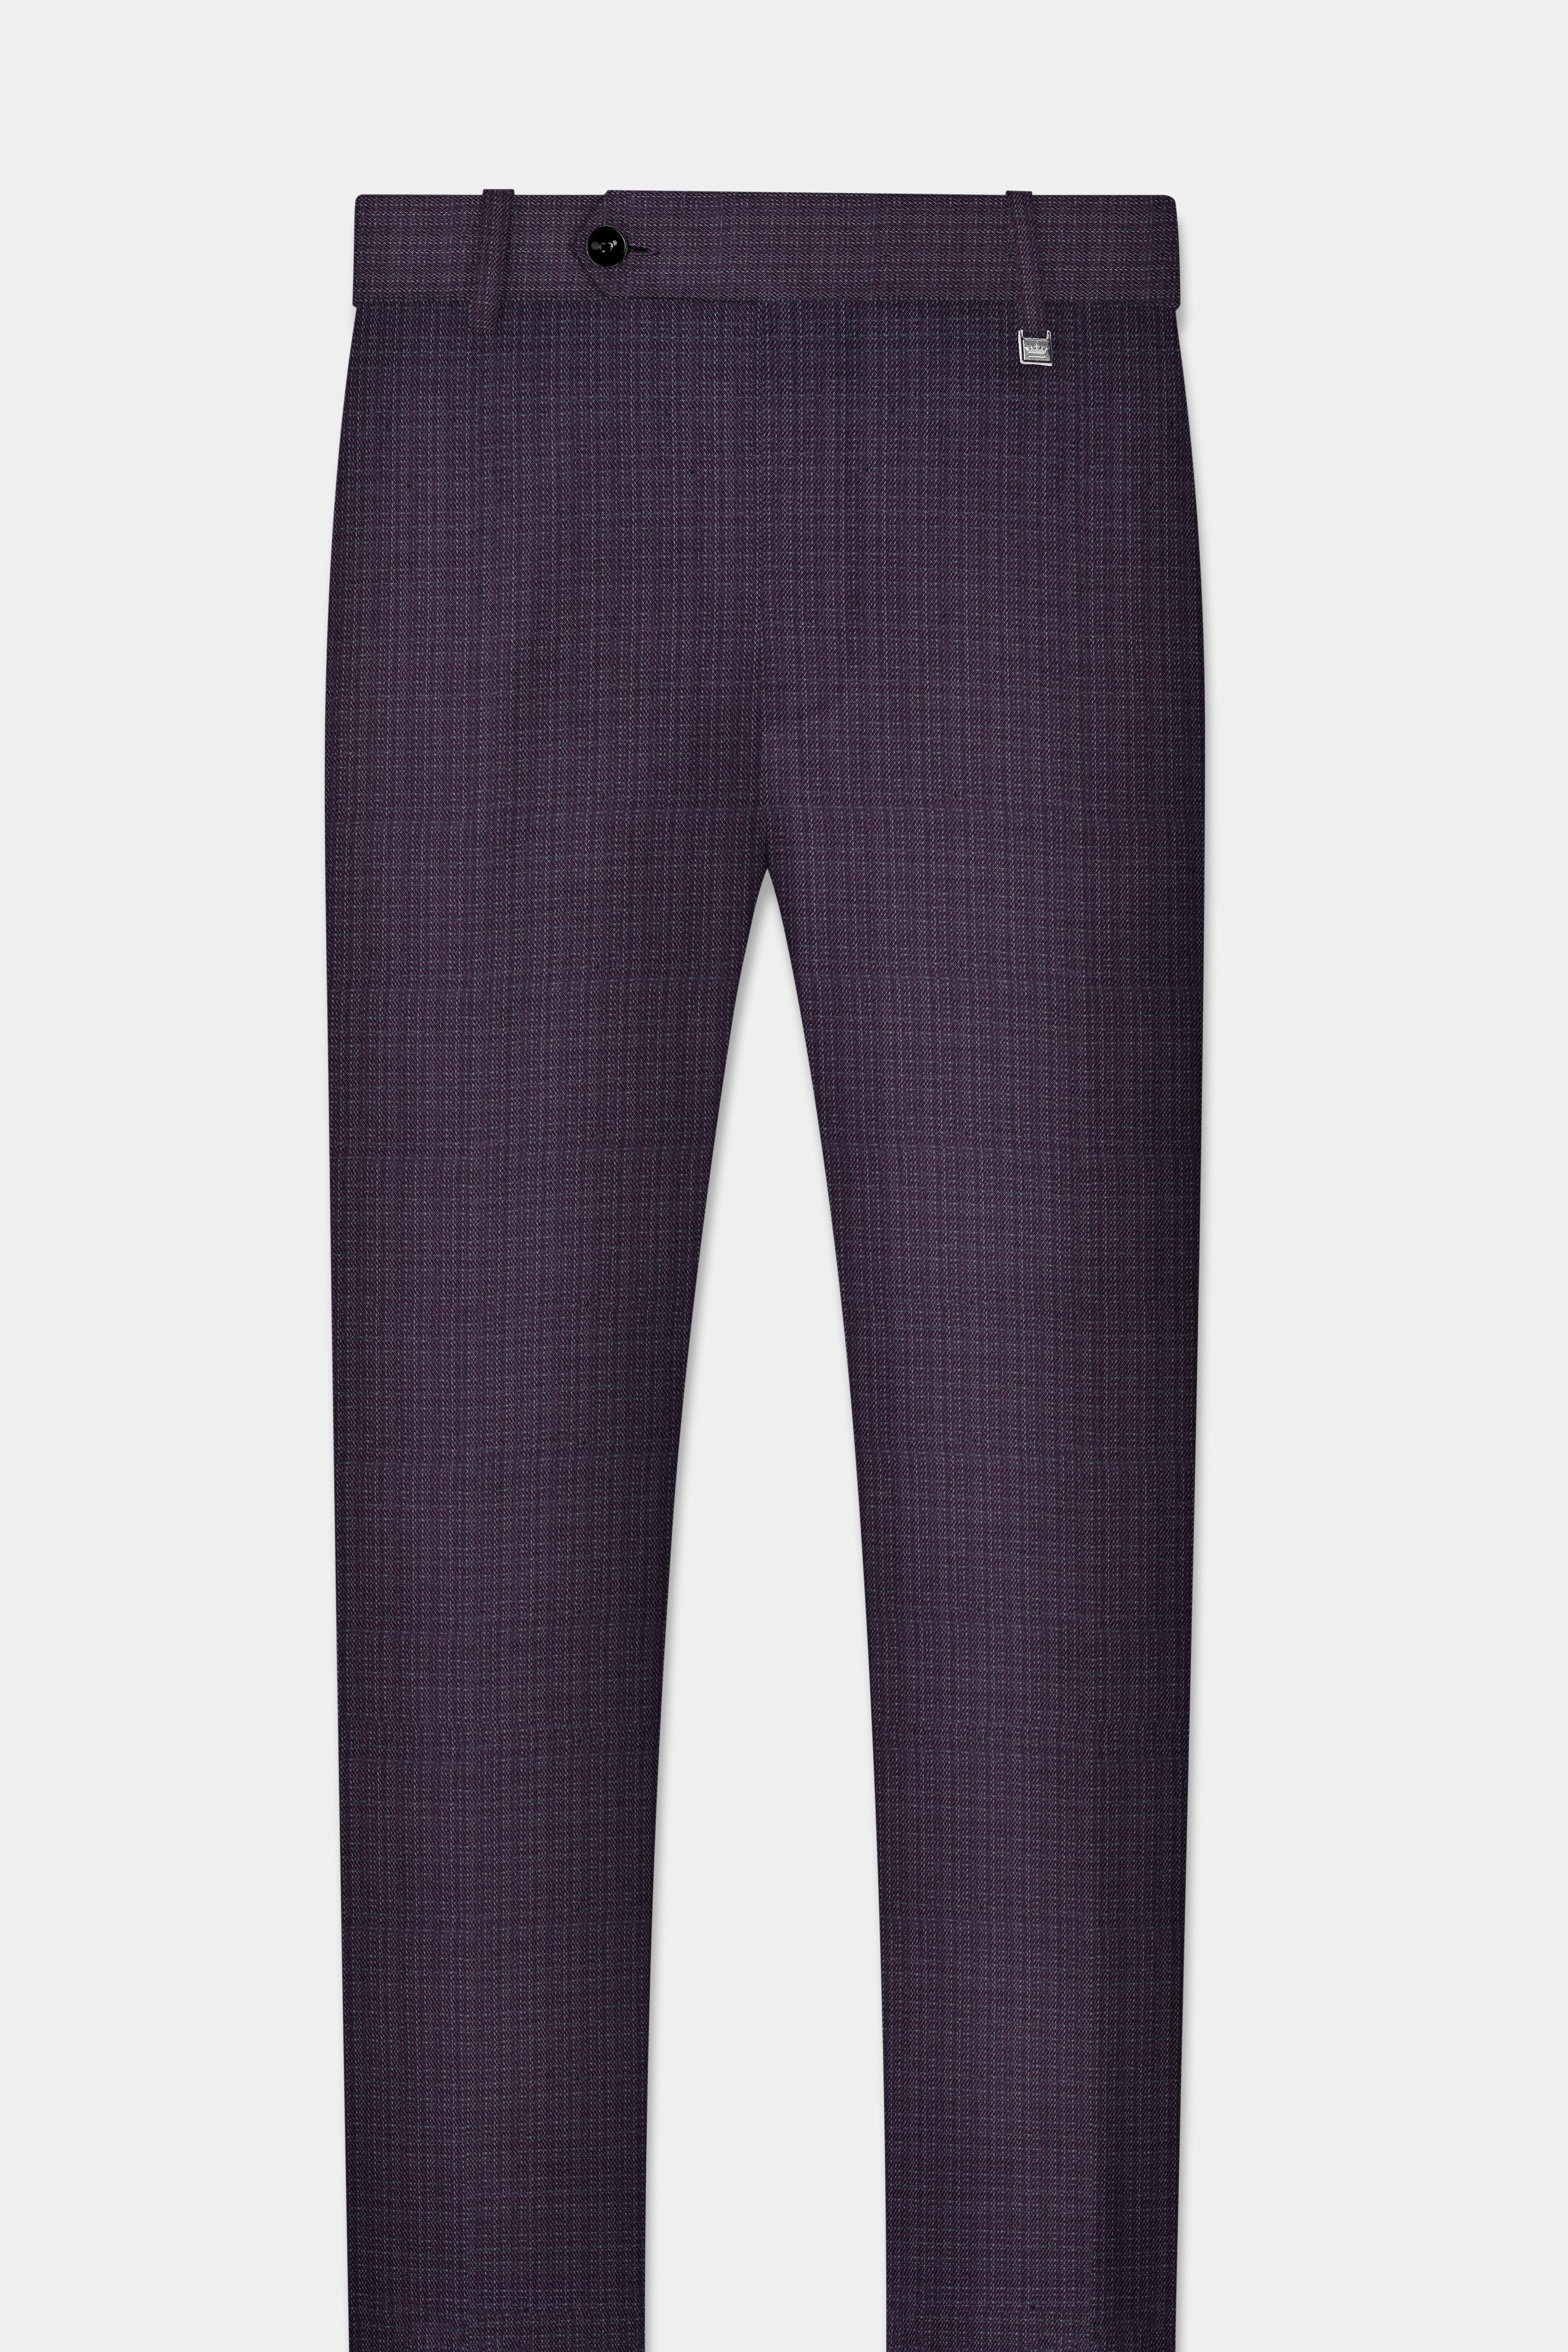 Men's Classic Pants [NC060-CLASSICS-KHAKI] - FlynnO'Hara Uniforms